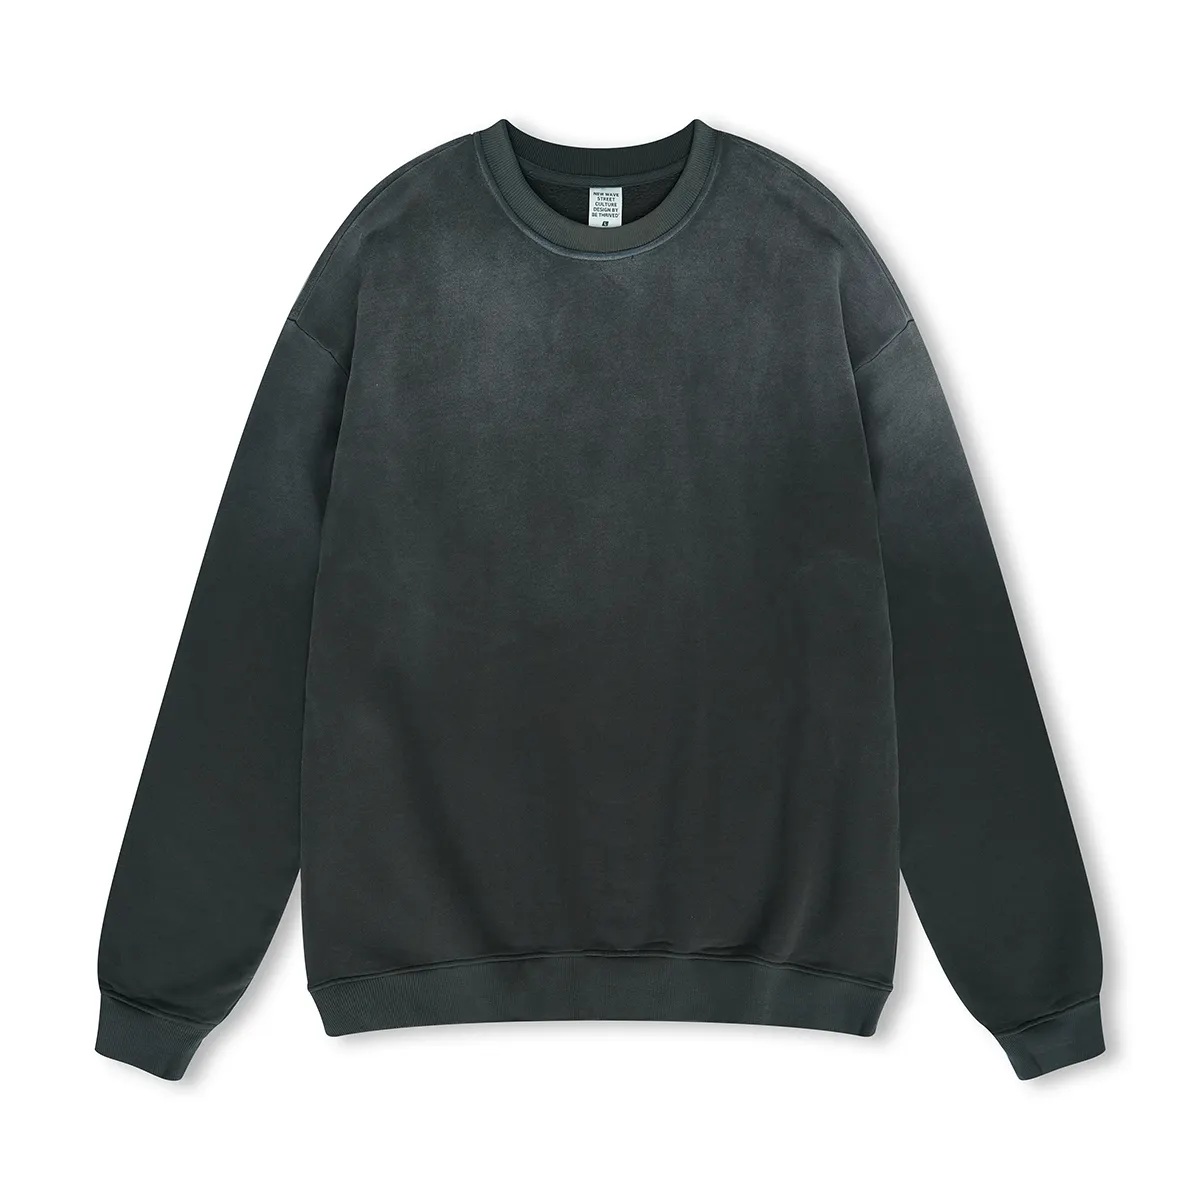 American Style Street Premium Sweatshirt für Männer Gradient lose schlichte lässige Sweatshirts mit Rundhals ausschnitt in loser Schüttung